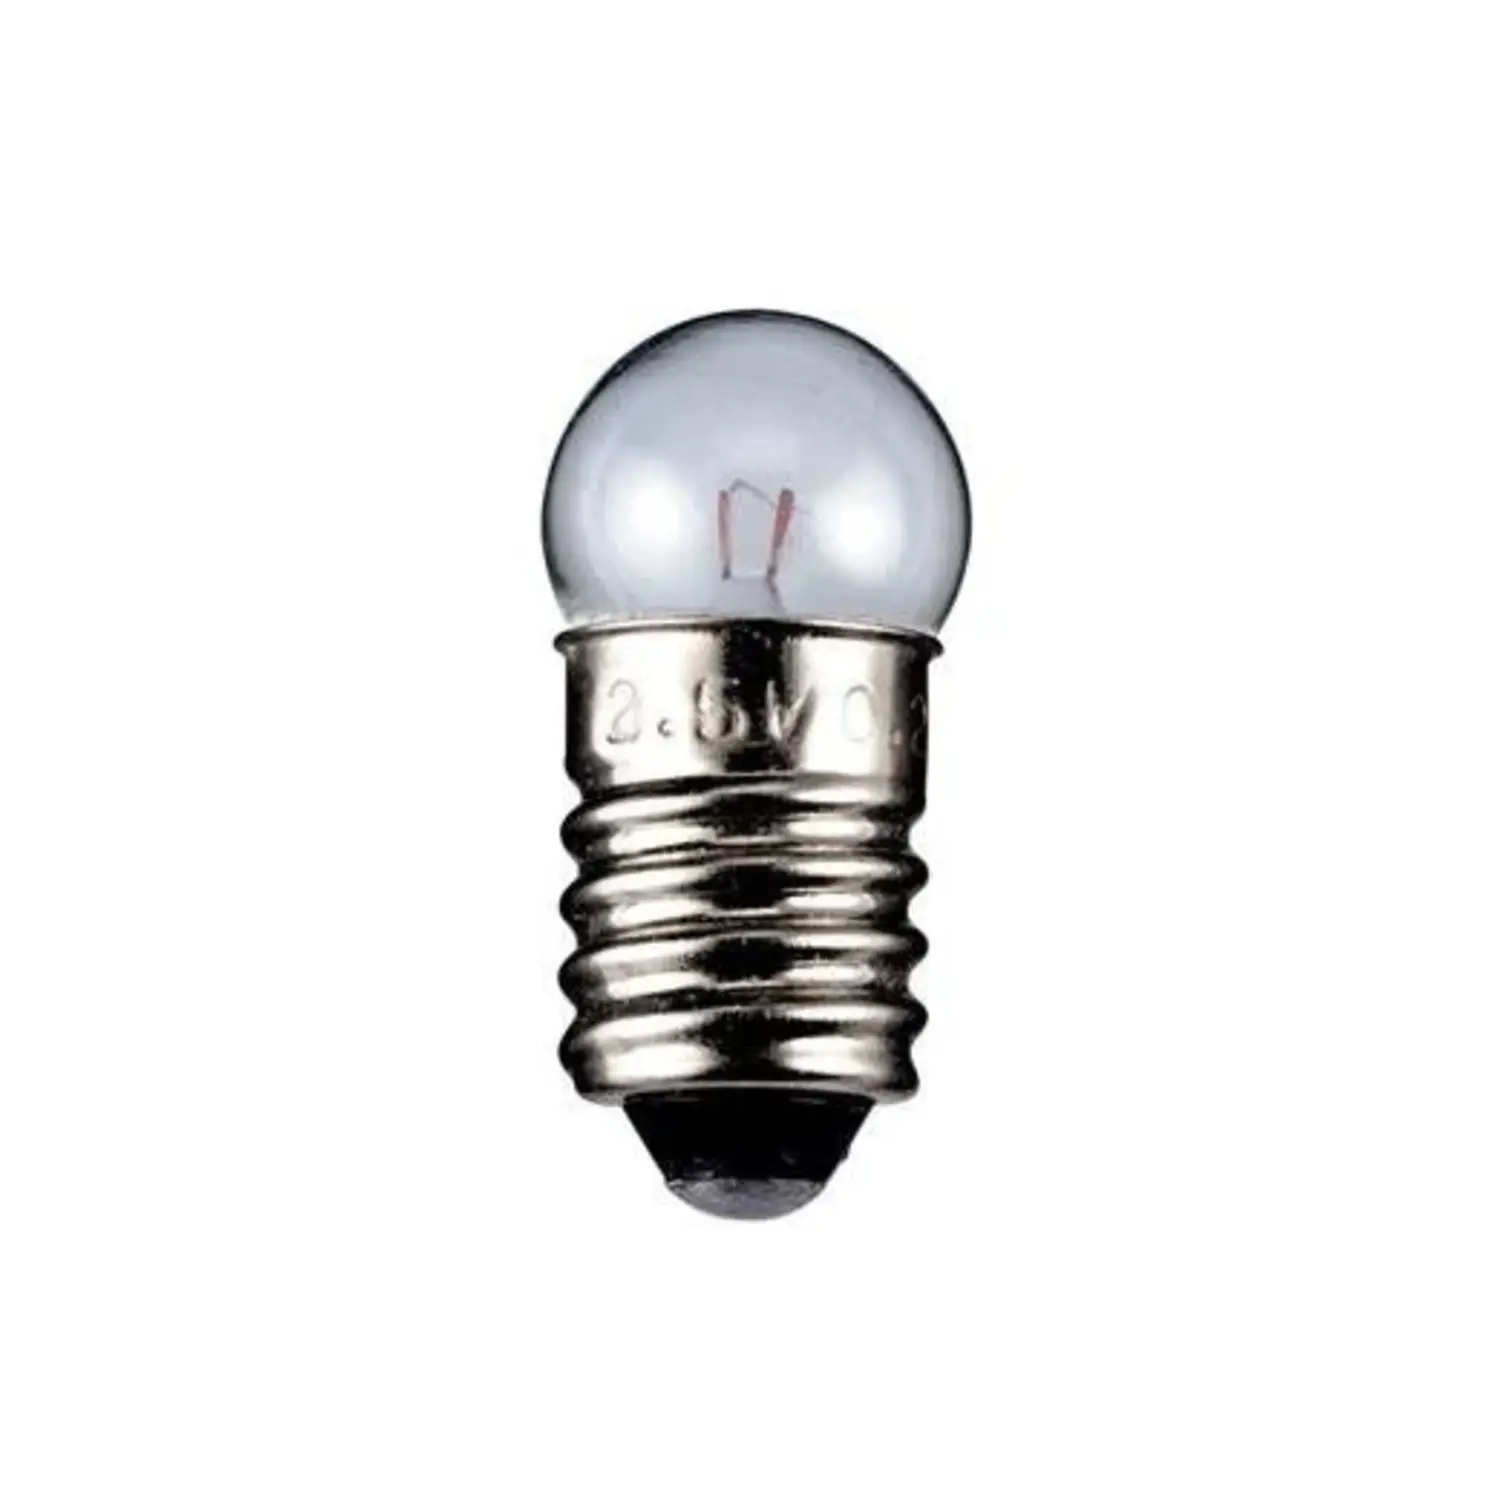 immagine del prodotto lampadina globulare chiara trasparente E10 CE 24 volt 2,40 watt wnt 9328